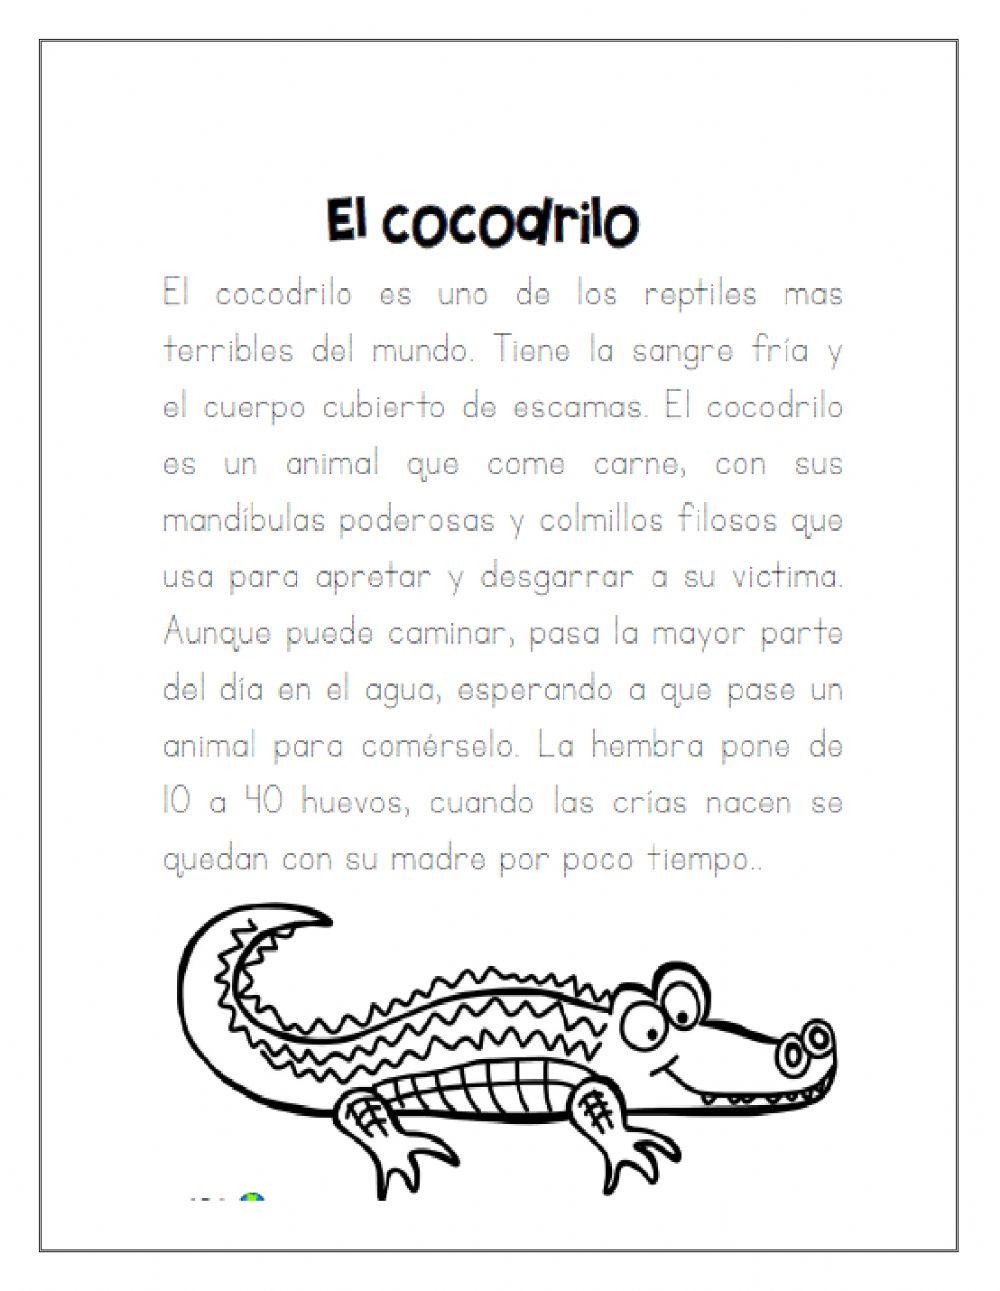 El cocodrilo-Texto informativo